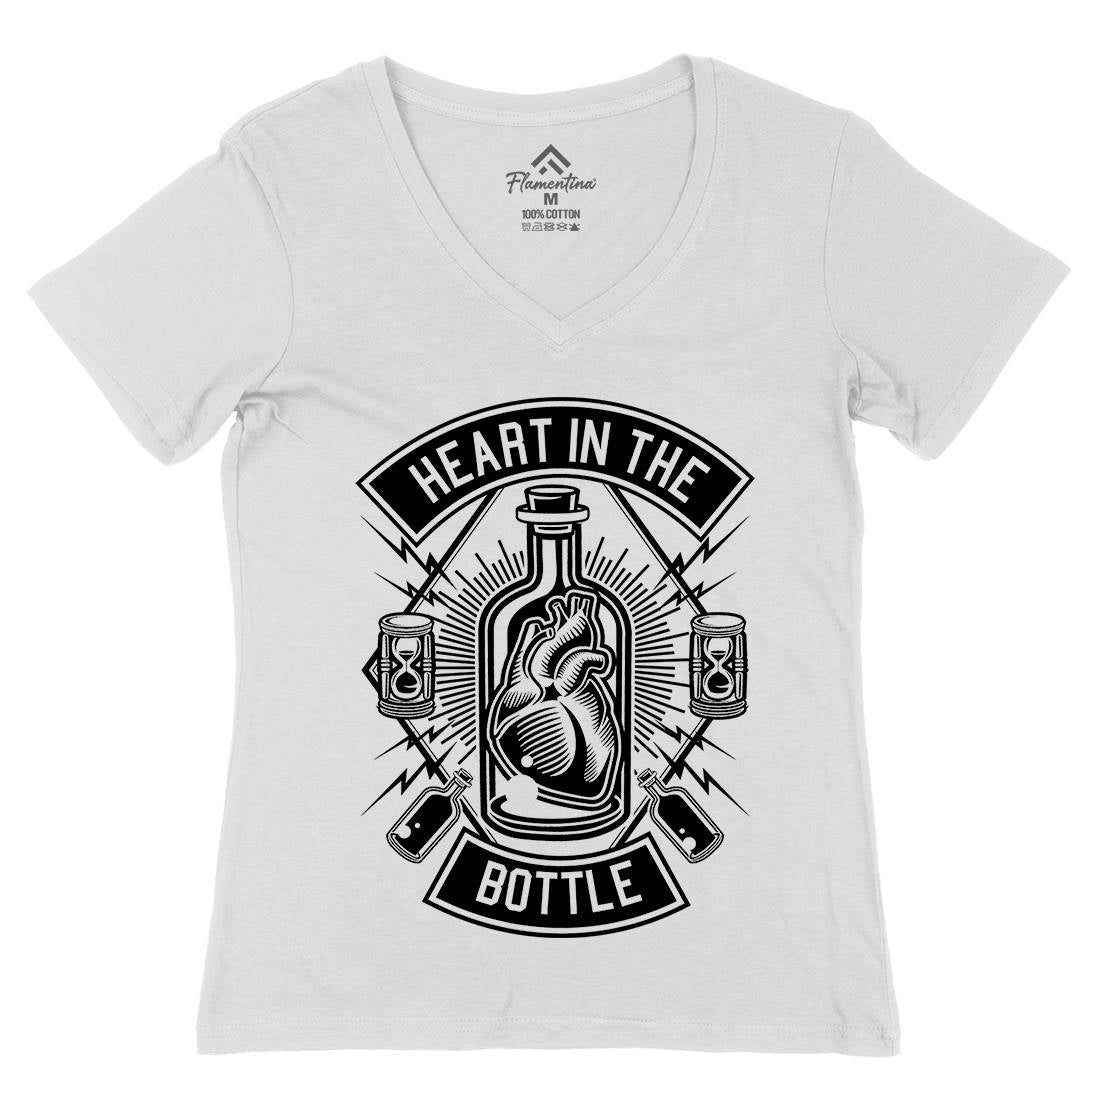 Heart In The Bottle Womens Organic V-Neck T-Shirt Navy B552